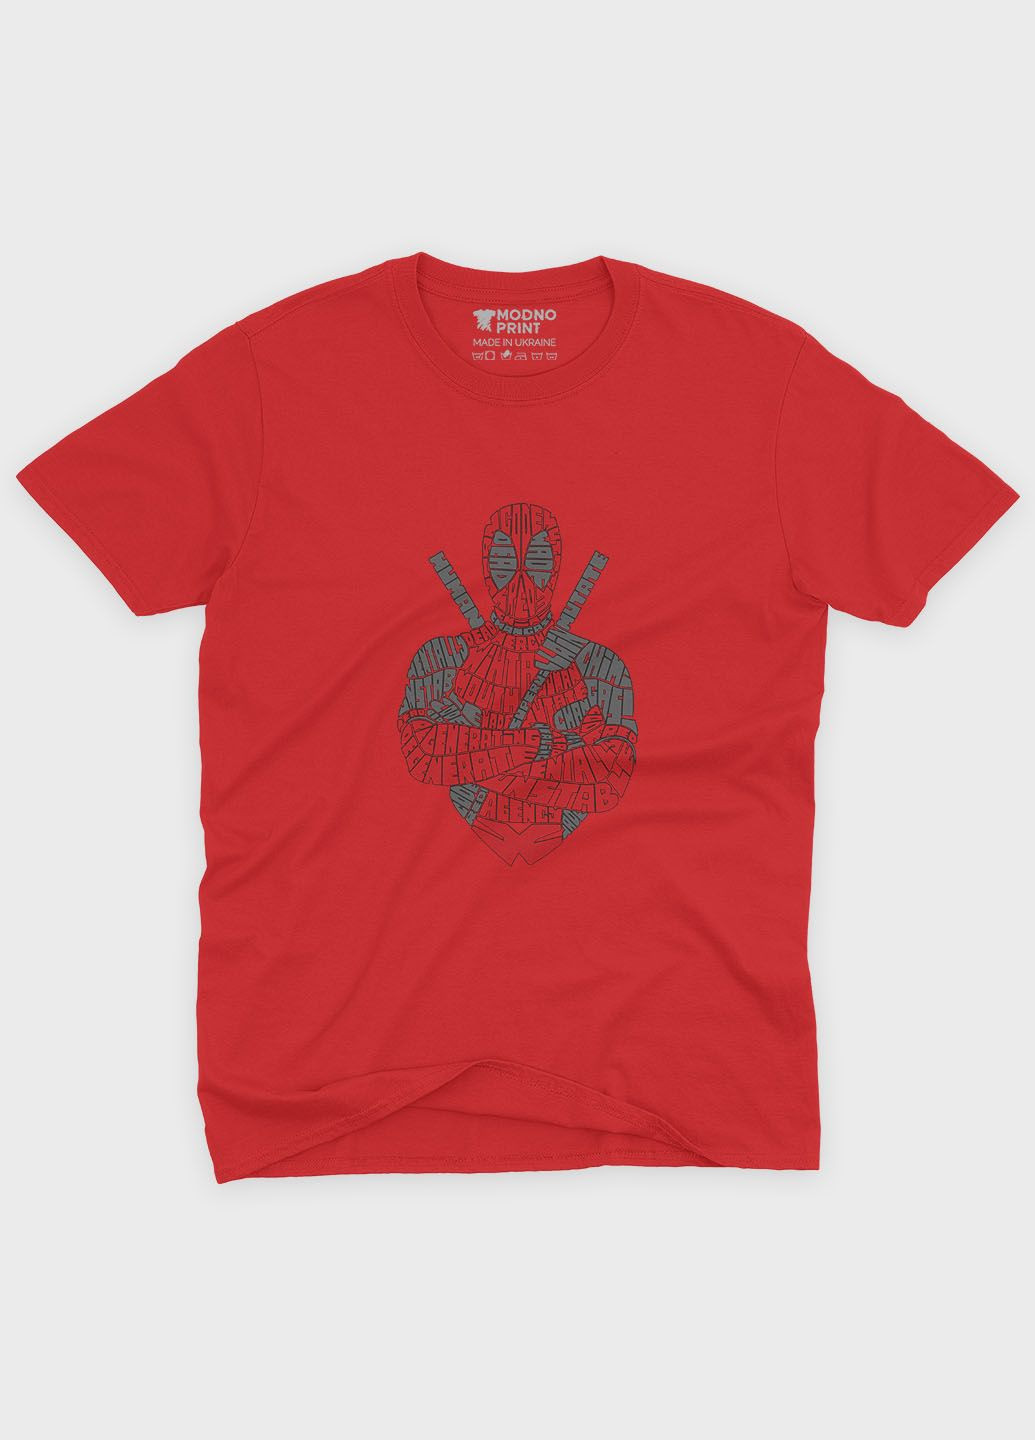 Красная демисезонная футболка для мальчика с принтом антигероя - дедпул (ts001-1-sre-006-015-001-b) Modno